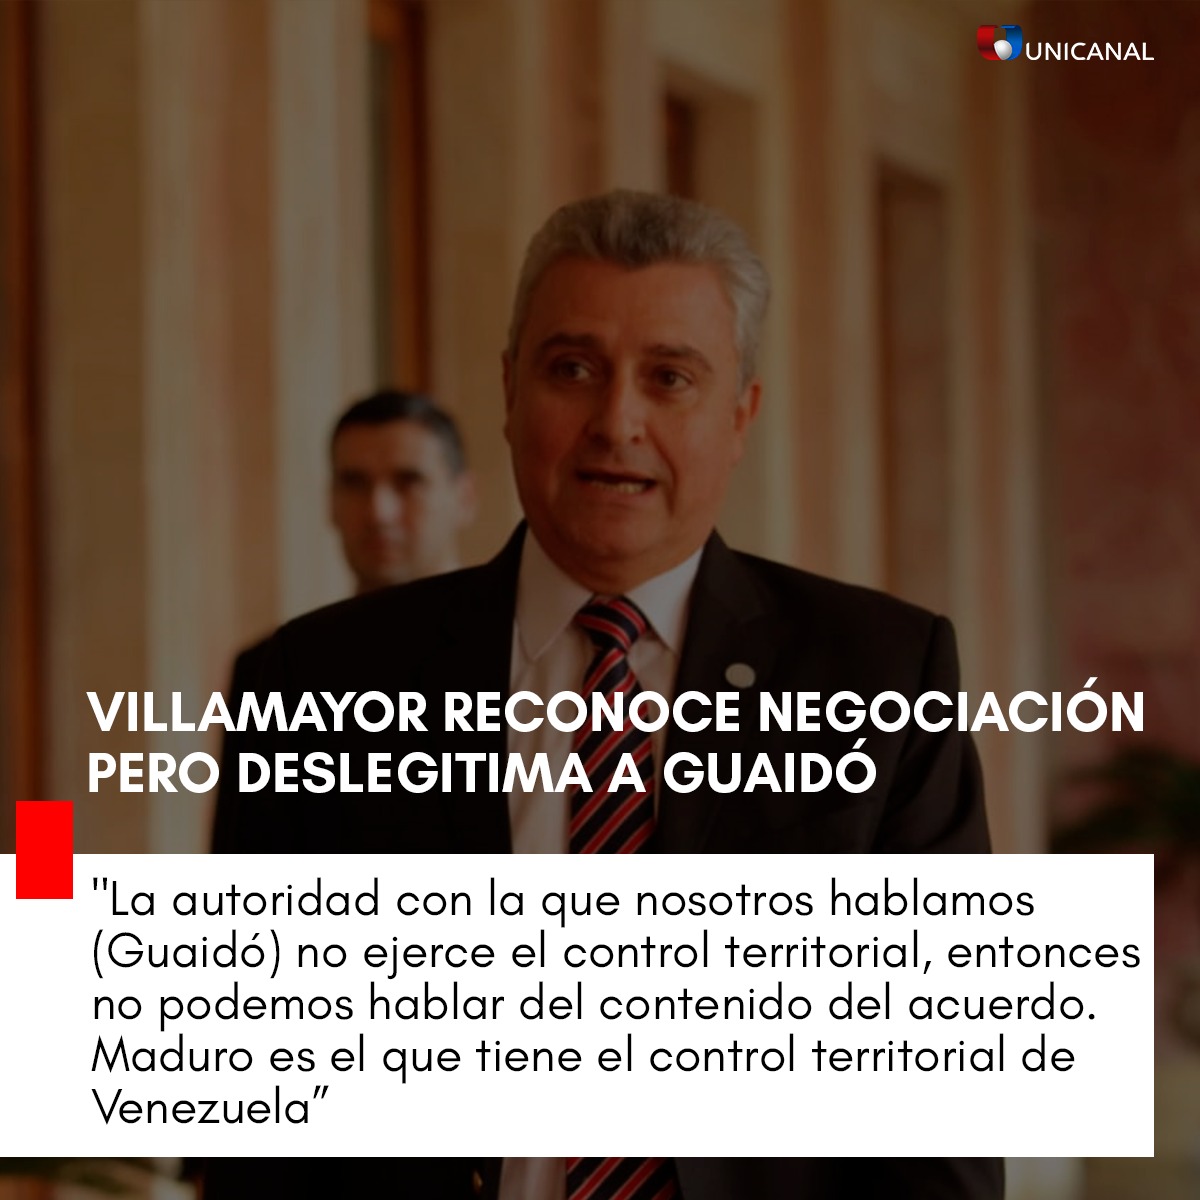 Villamayor reconoce negociación, pero deslegitima a Guaidó. Fuente: Unicanal.